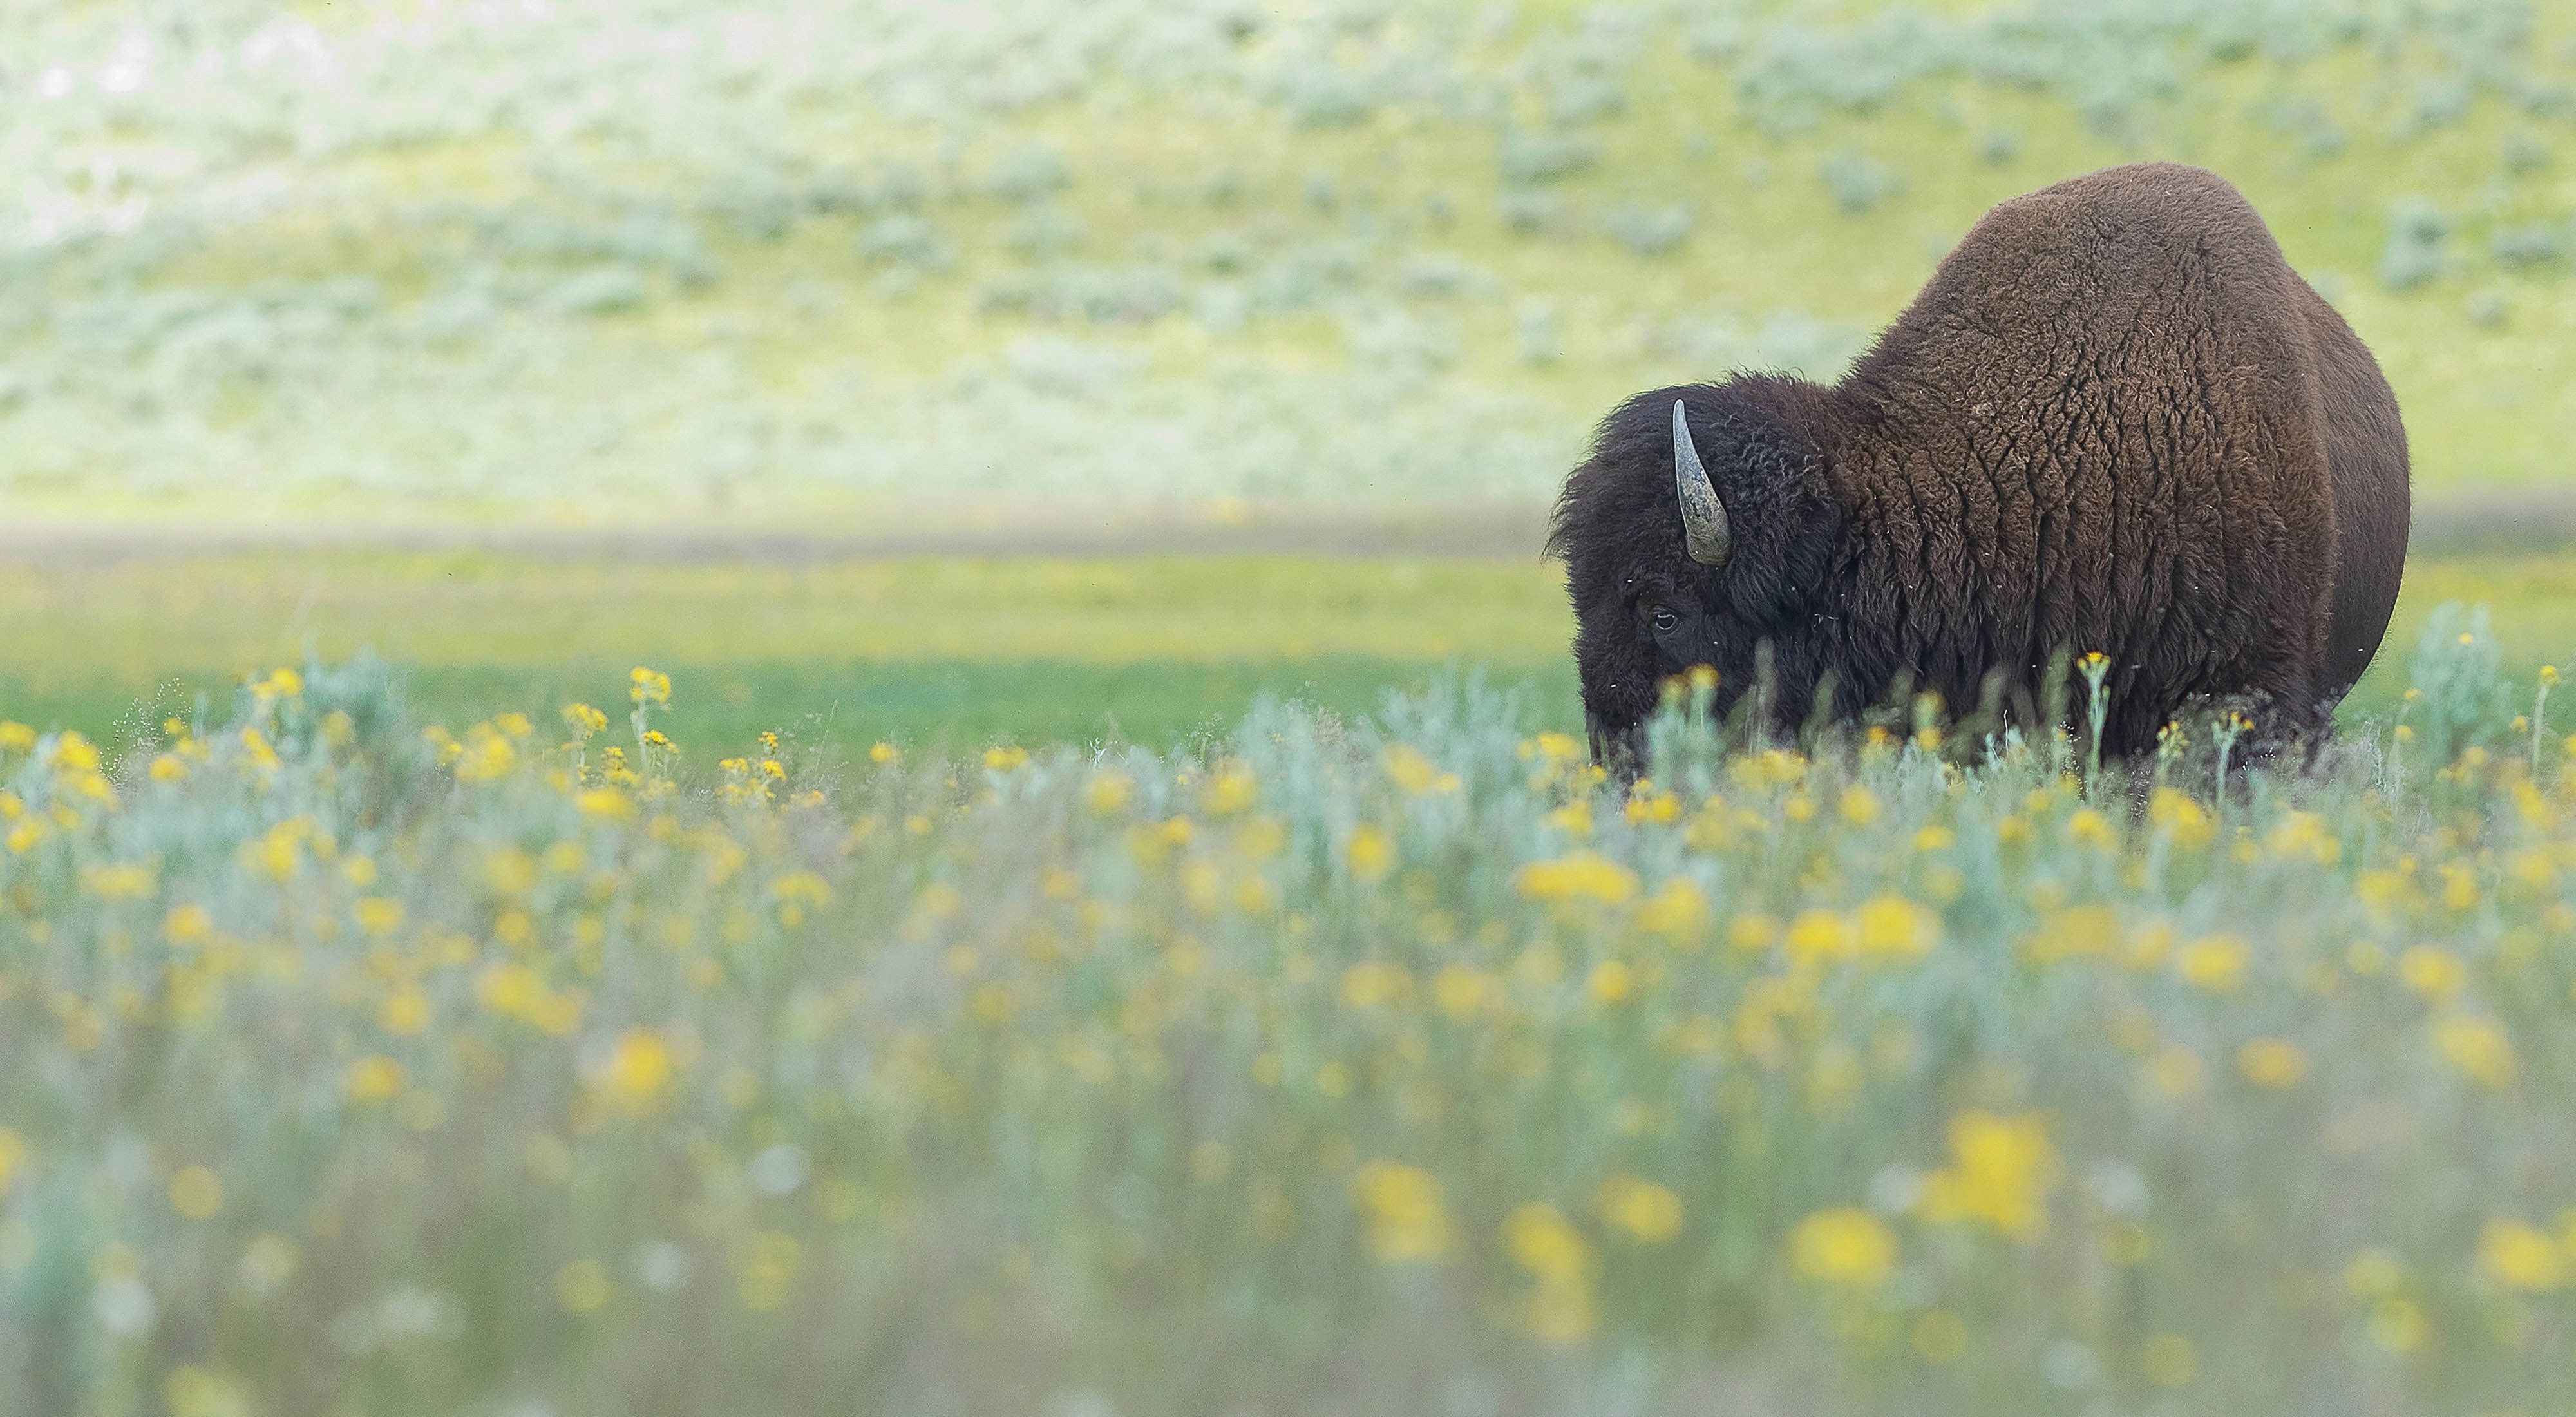 Buffalo in field of flowers